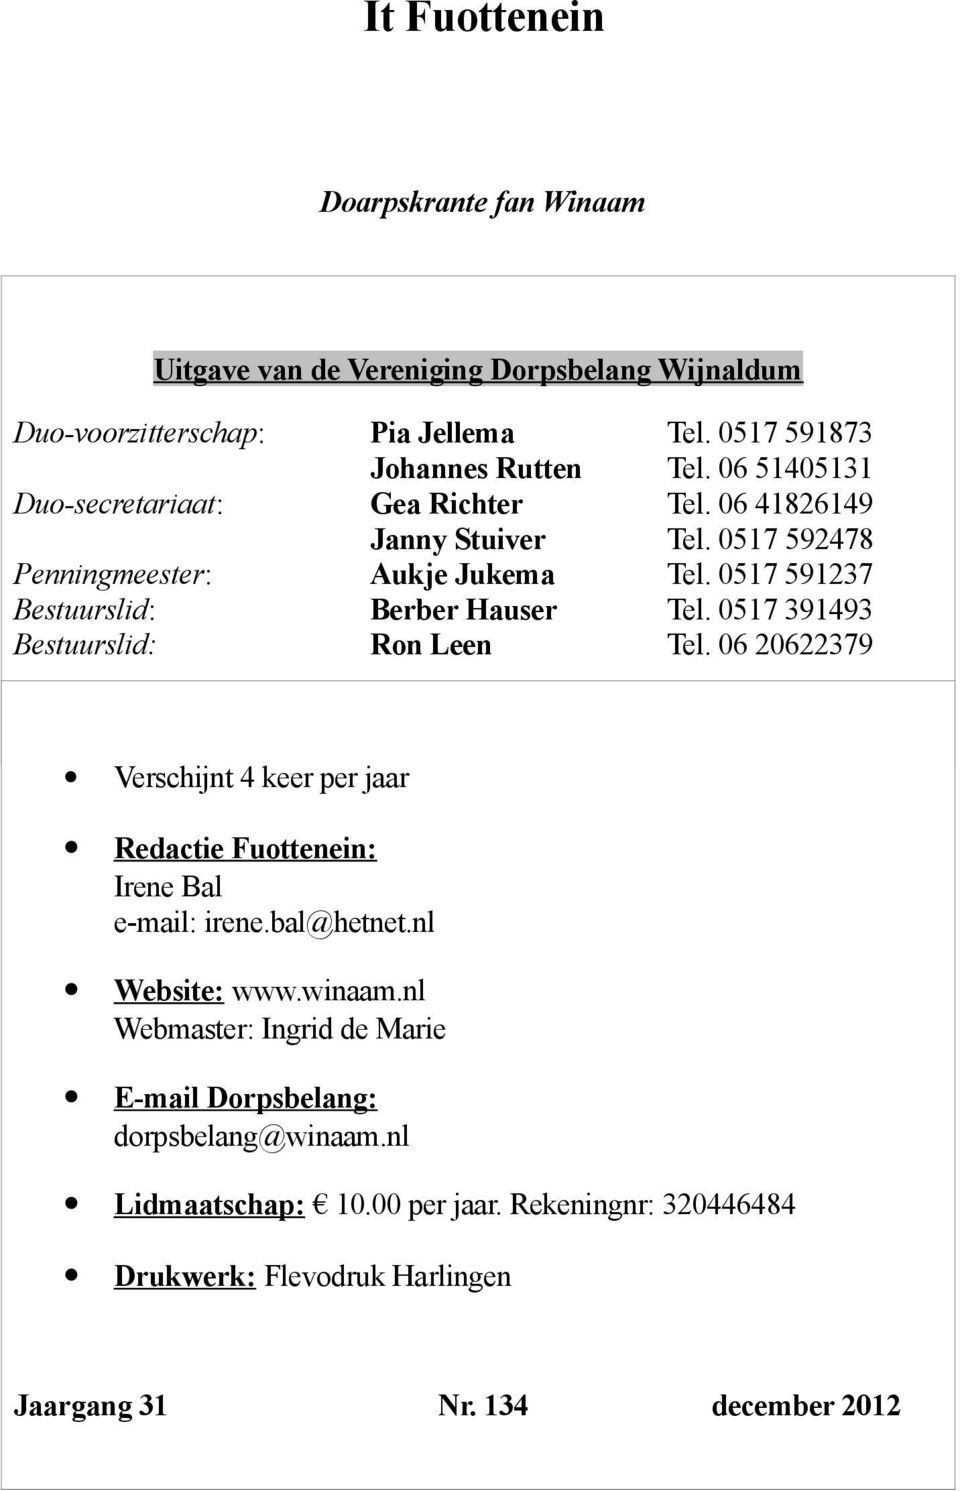 0517 391493 Bestuurslid: Ron Leen Tel. 06 20622379 Verschijnt 4 keer per jaar Redactie Fuottenein: Irene Bal e-mail: irene.bal@hetnet.nl Website: www.winaam.